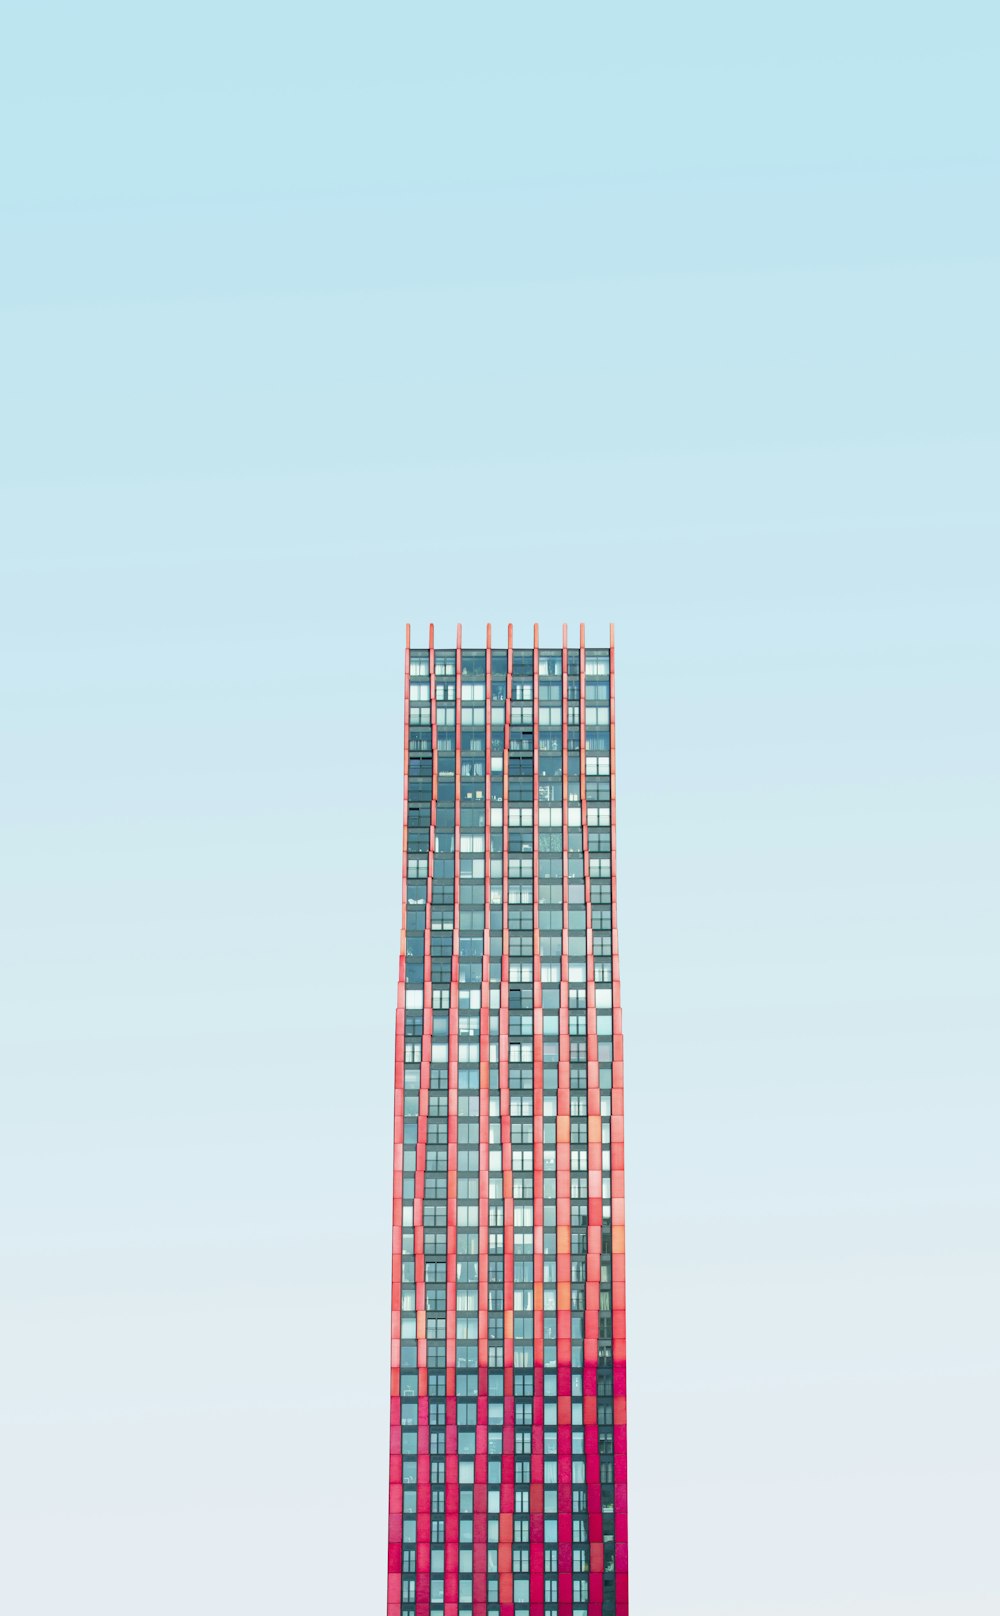 edifício alto sob céu azul durante o dia